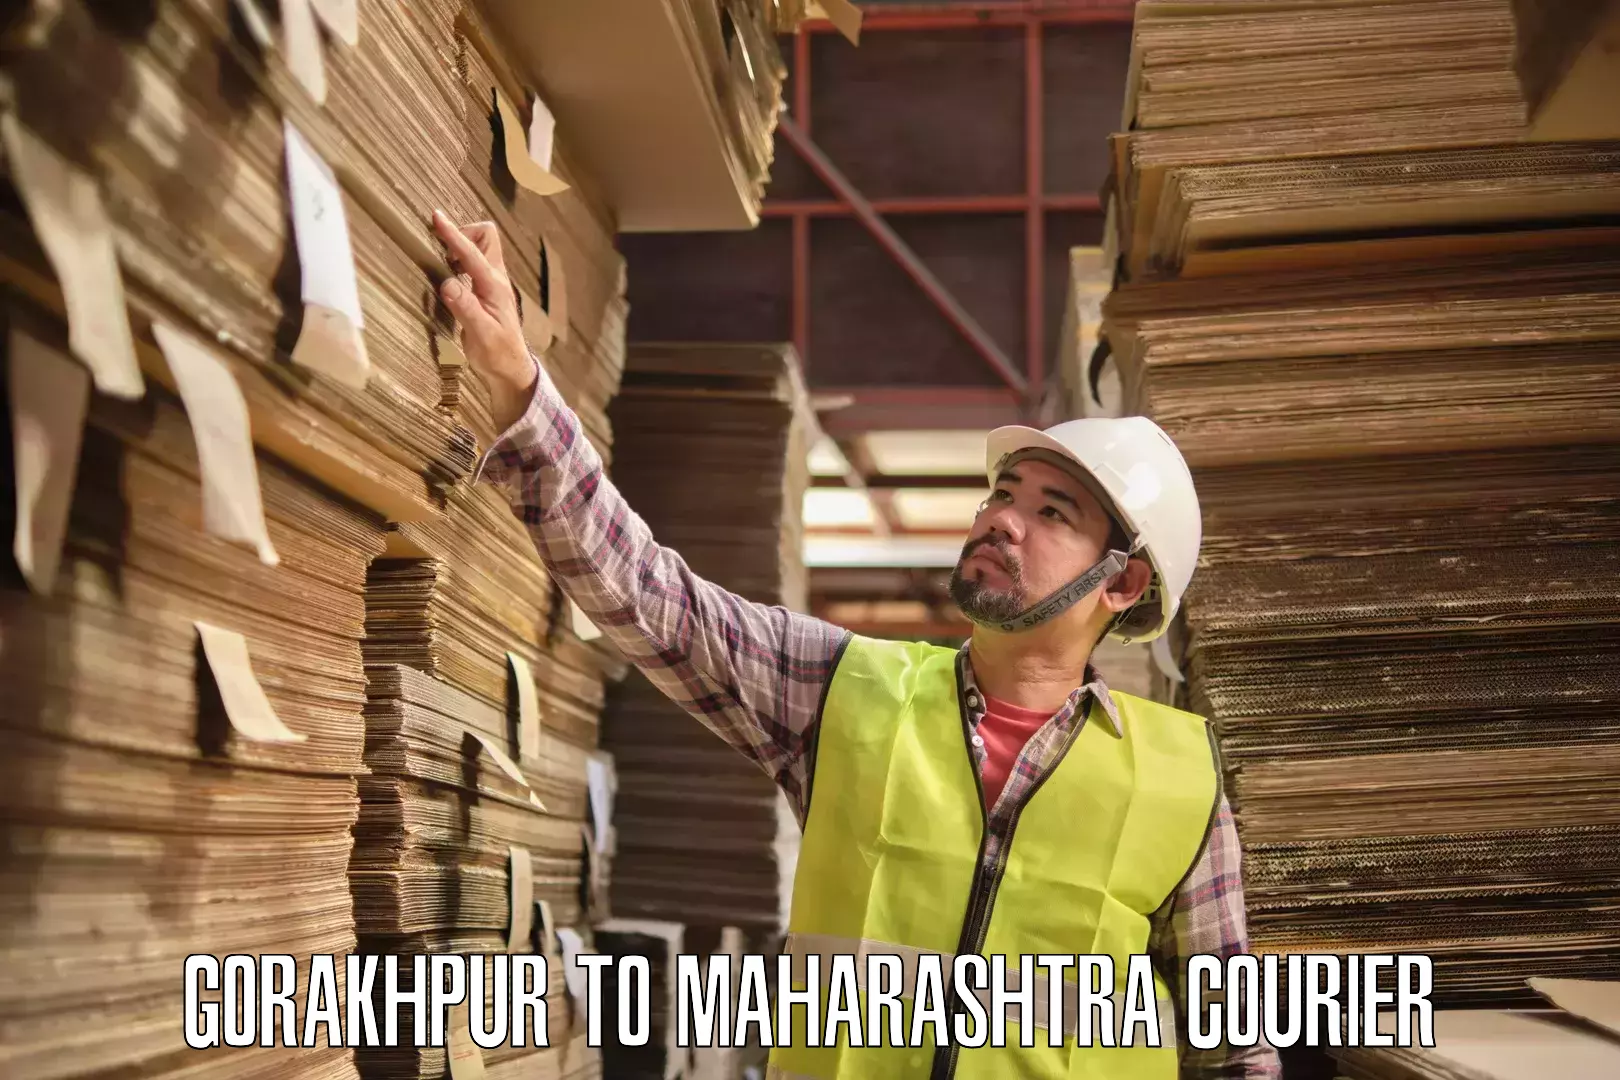 Business shipping needs Gorakhpur to Maharashtra